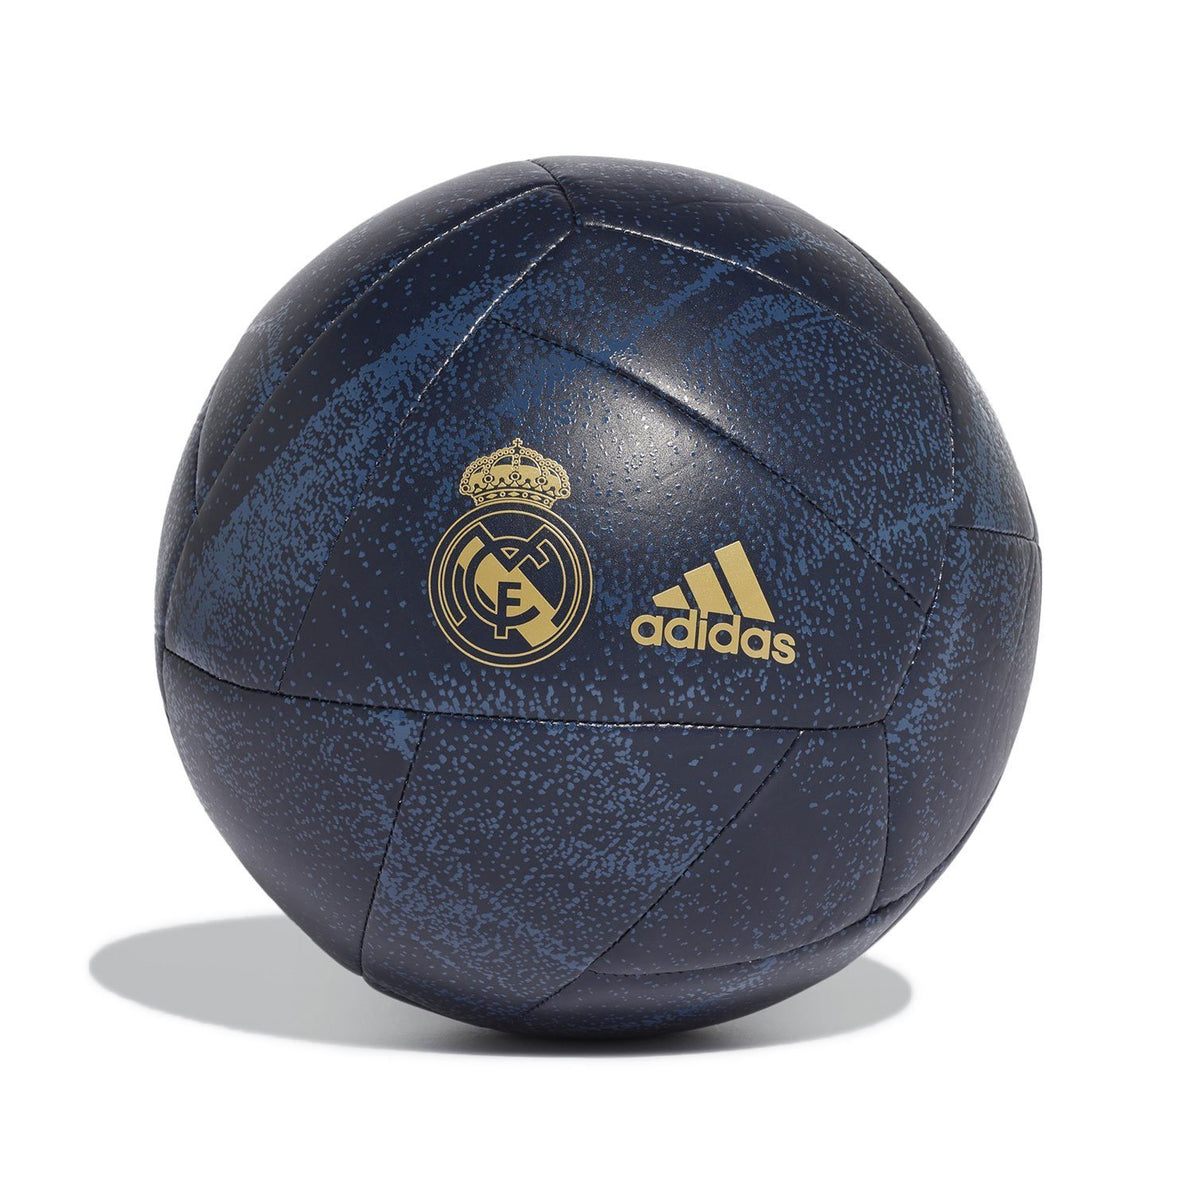 レアル マドリード Real Madrid Adidas サッカーボール ブルー ゴールド レアル マドリードcf Jpショップ